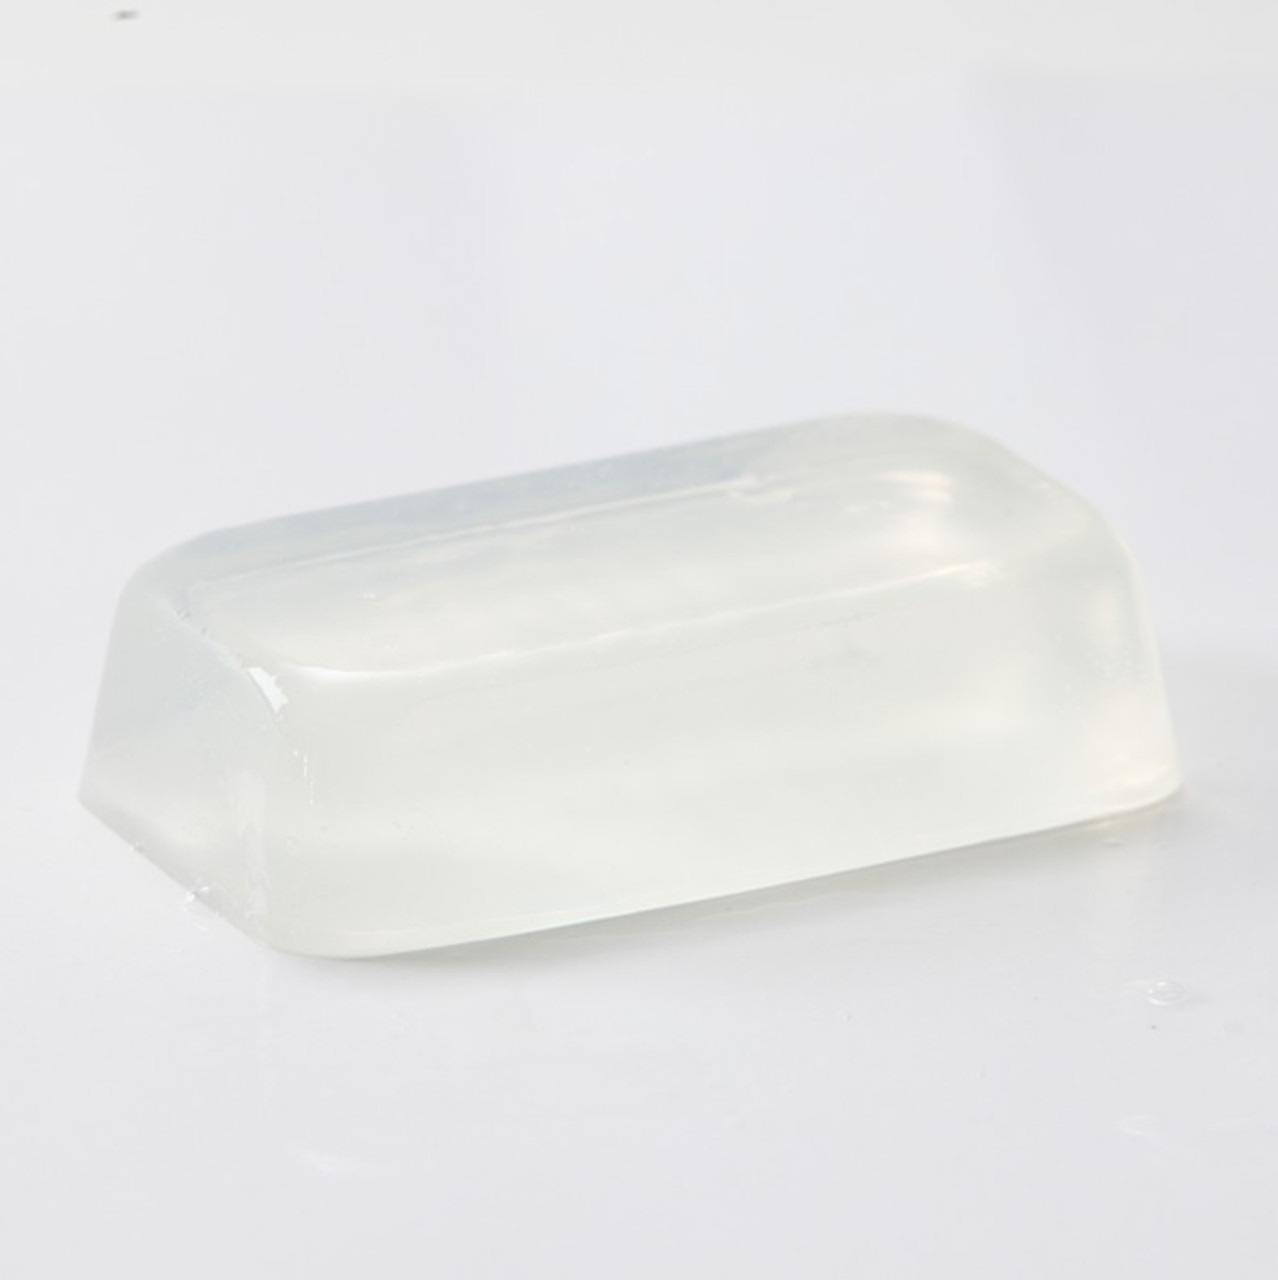 Stephenson - Base de savon à la glycérine (Melt and Pour) Transparent 1 kg